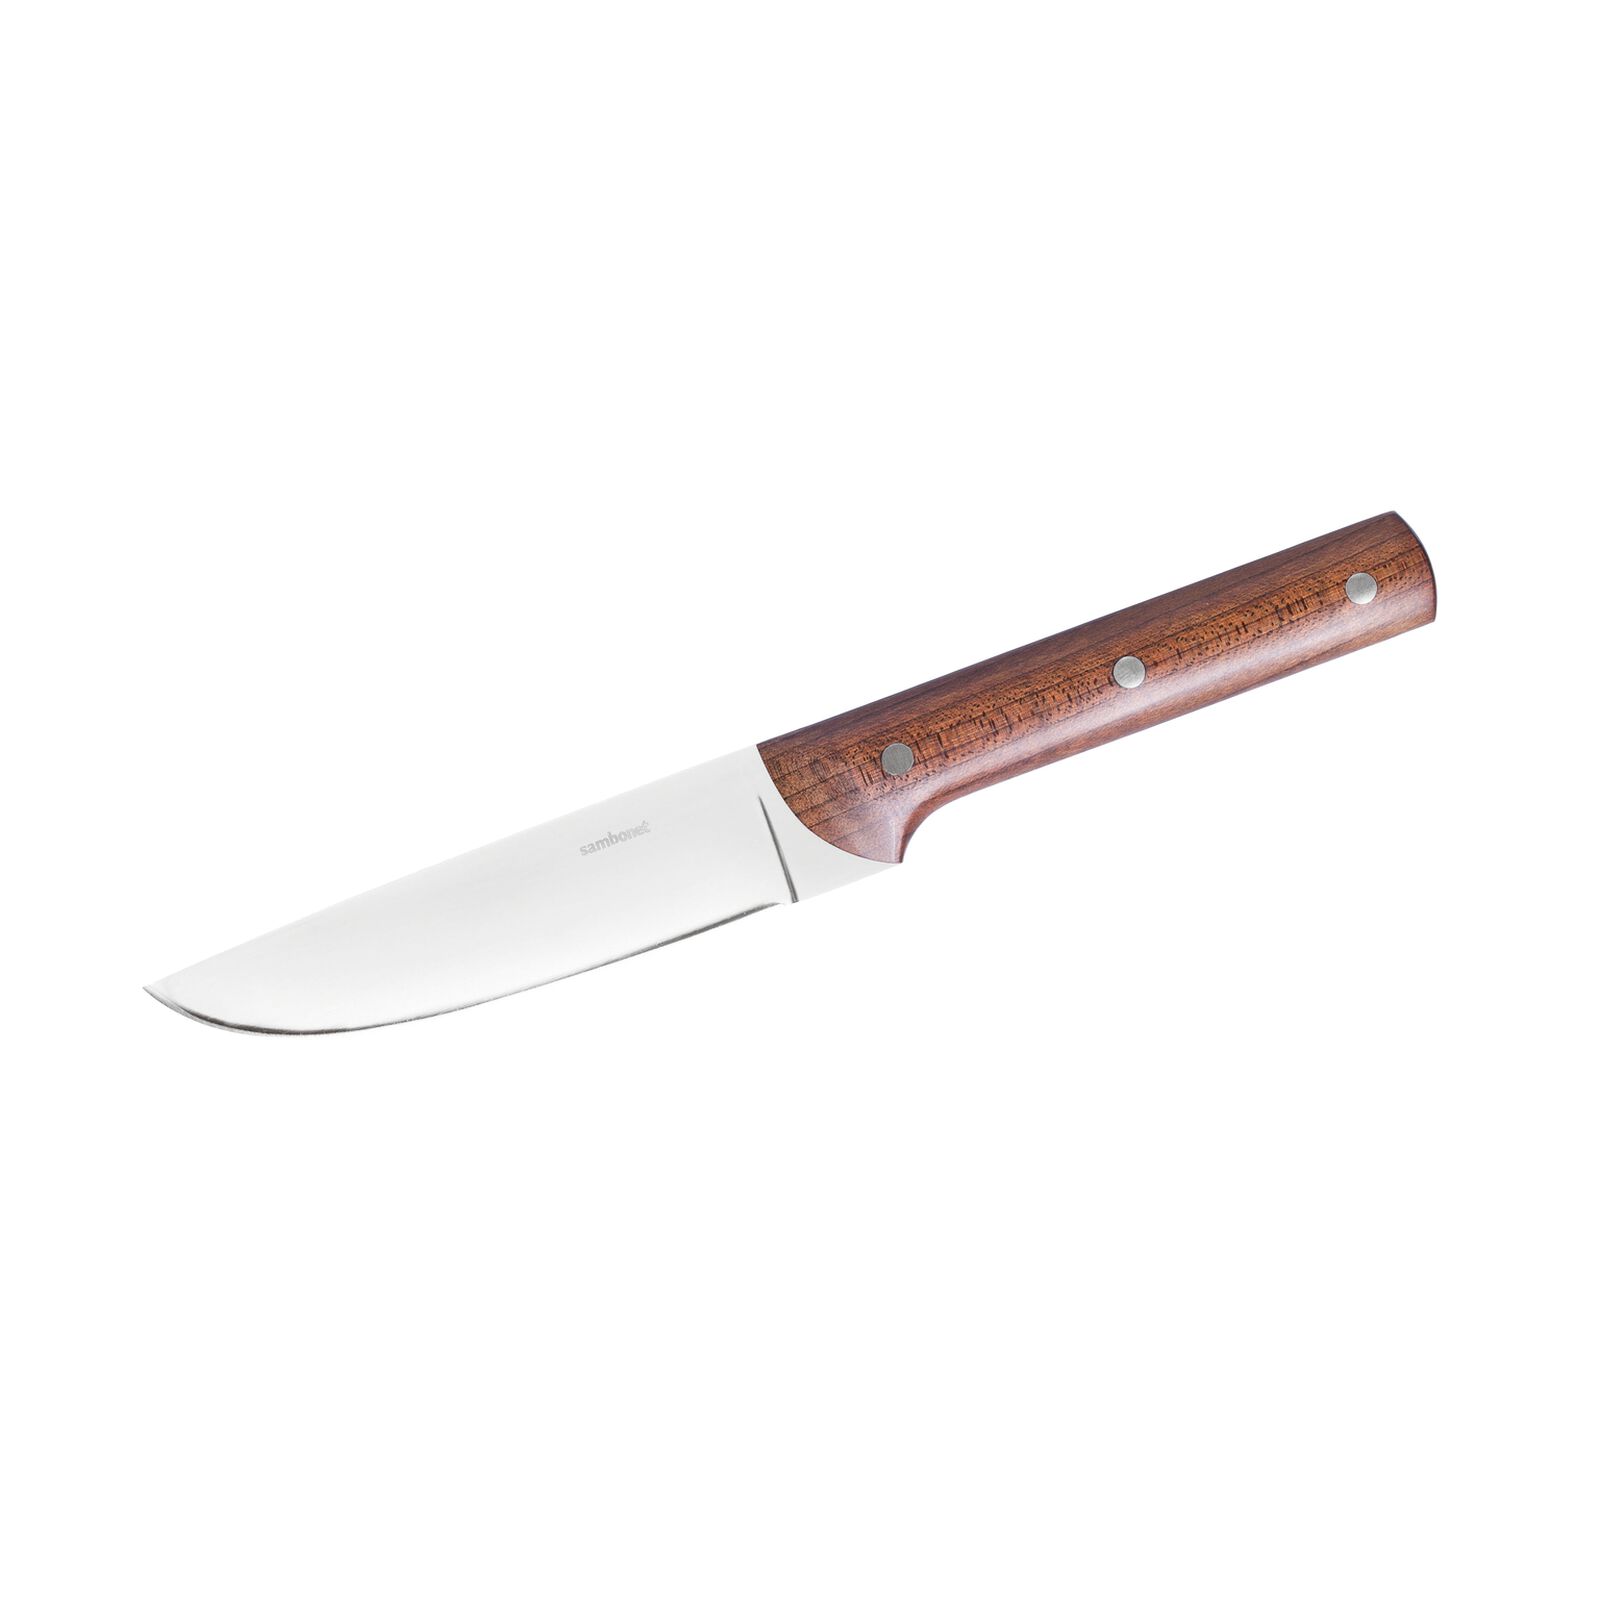 Sambonet ~ Steak Knives ~ Porterhouse ~ Set 2 Porterhouse Non-Serrated s/s  Wood, Price $145.00 in Huntsville, AL from Lawren*s